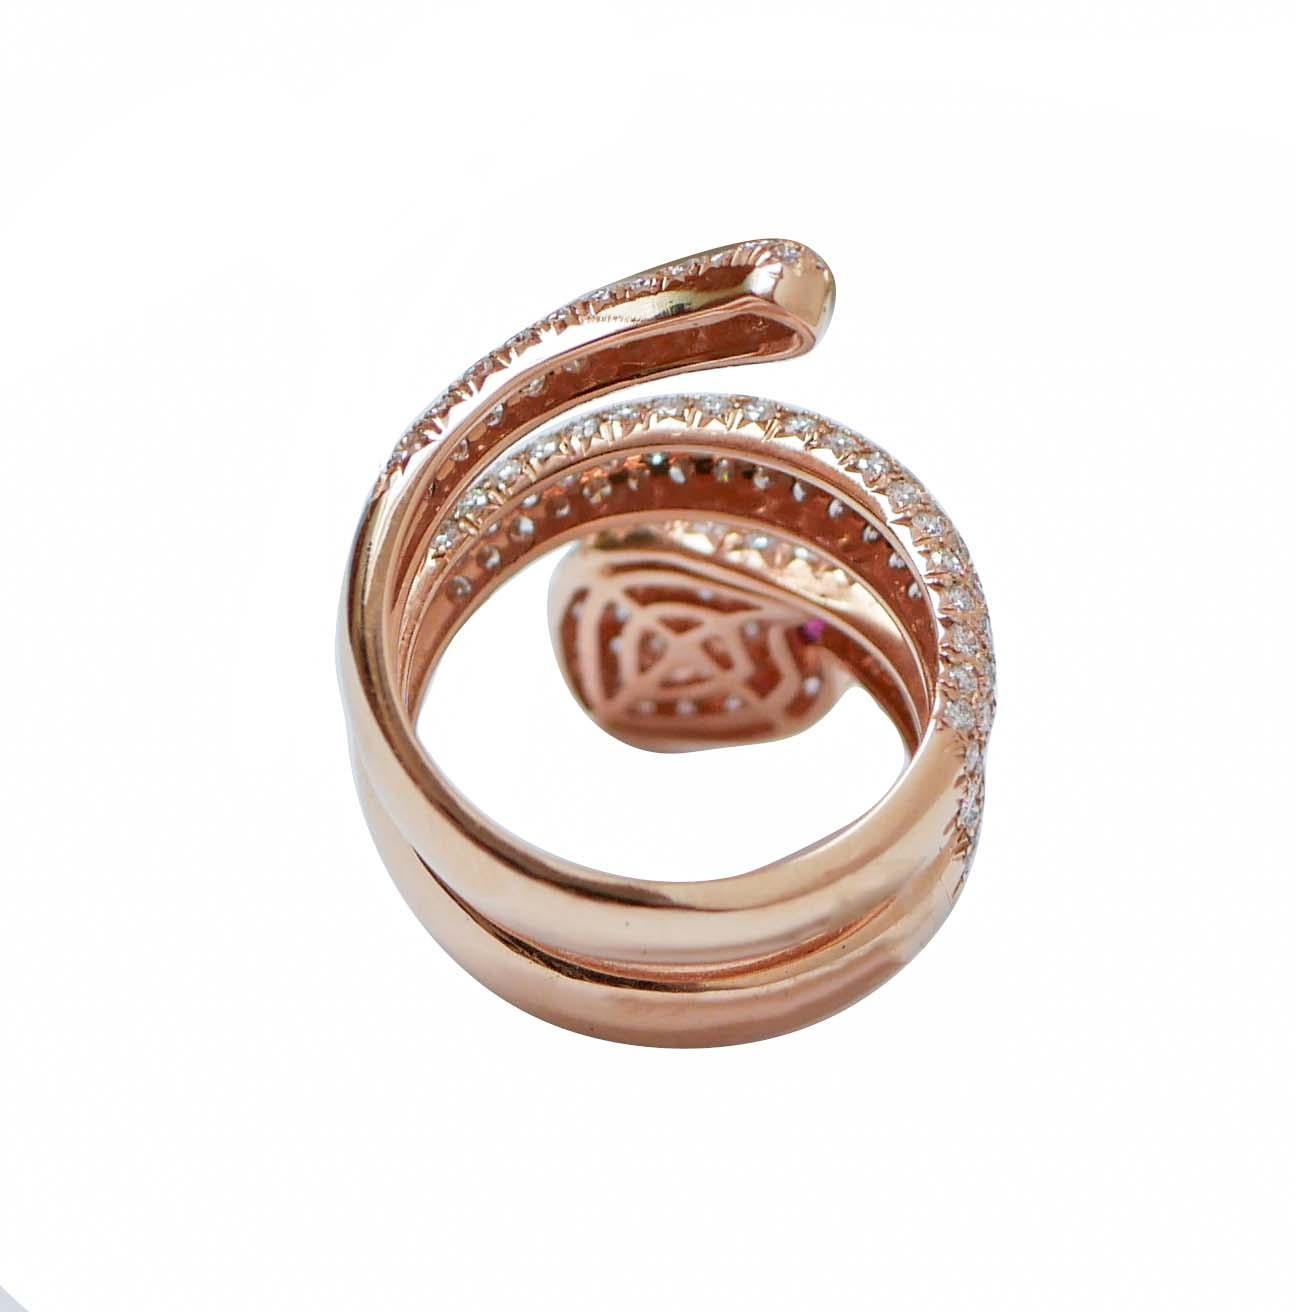 Modern Rubies, Diamonds, 18 Karat Rose Gold Snake Ring. For Sale